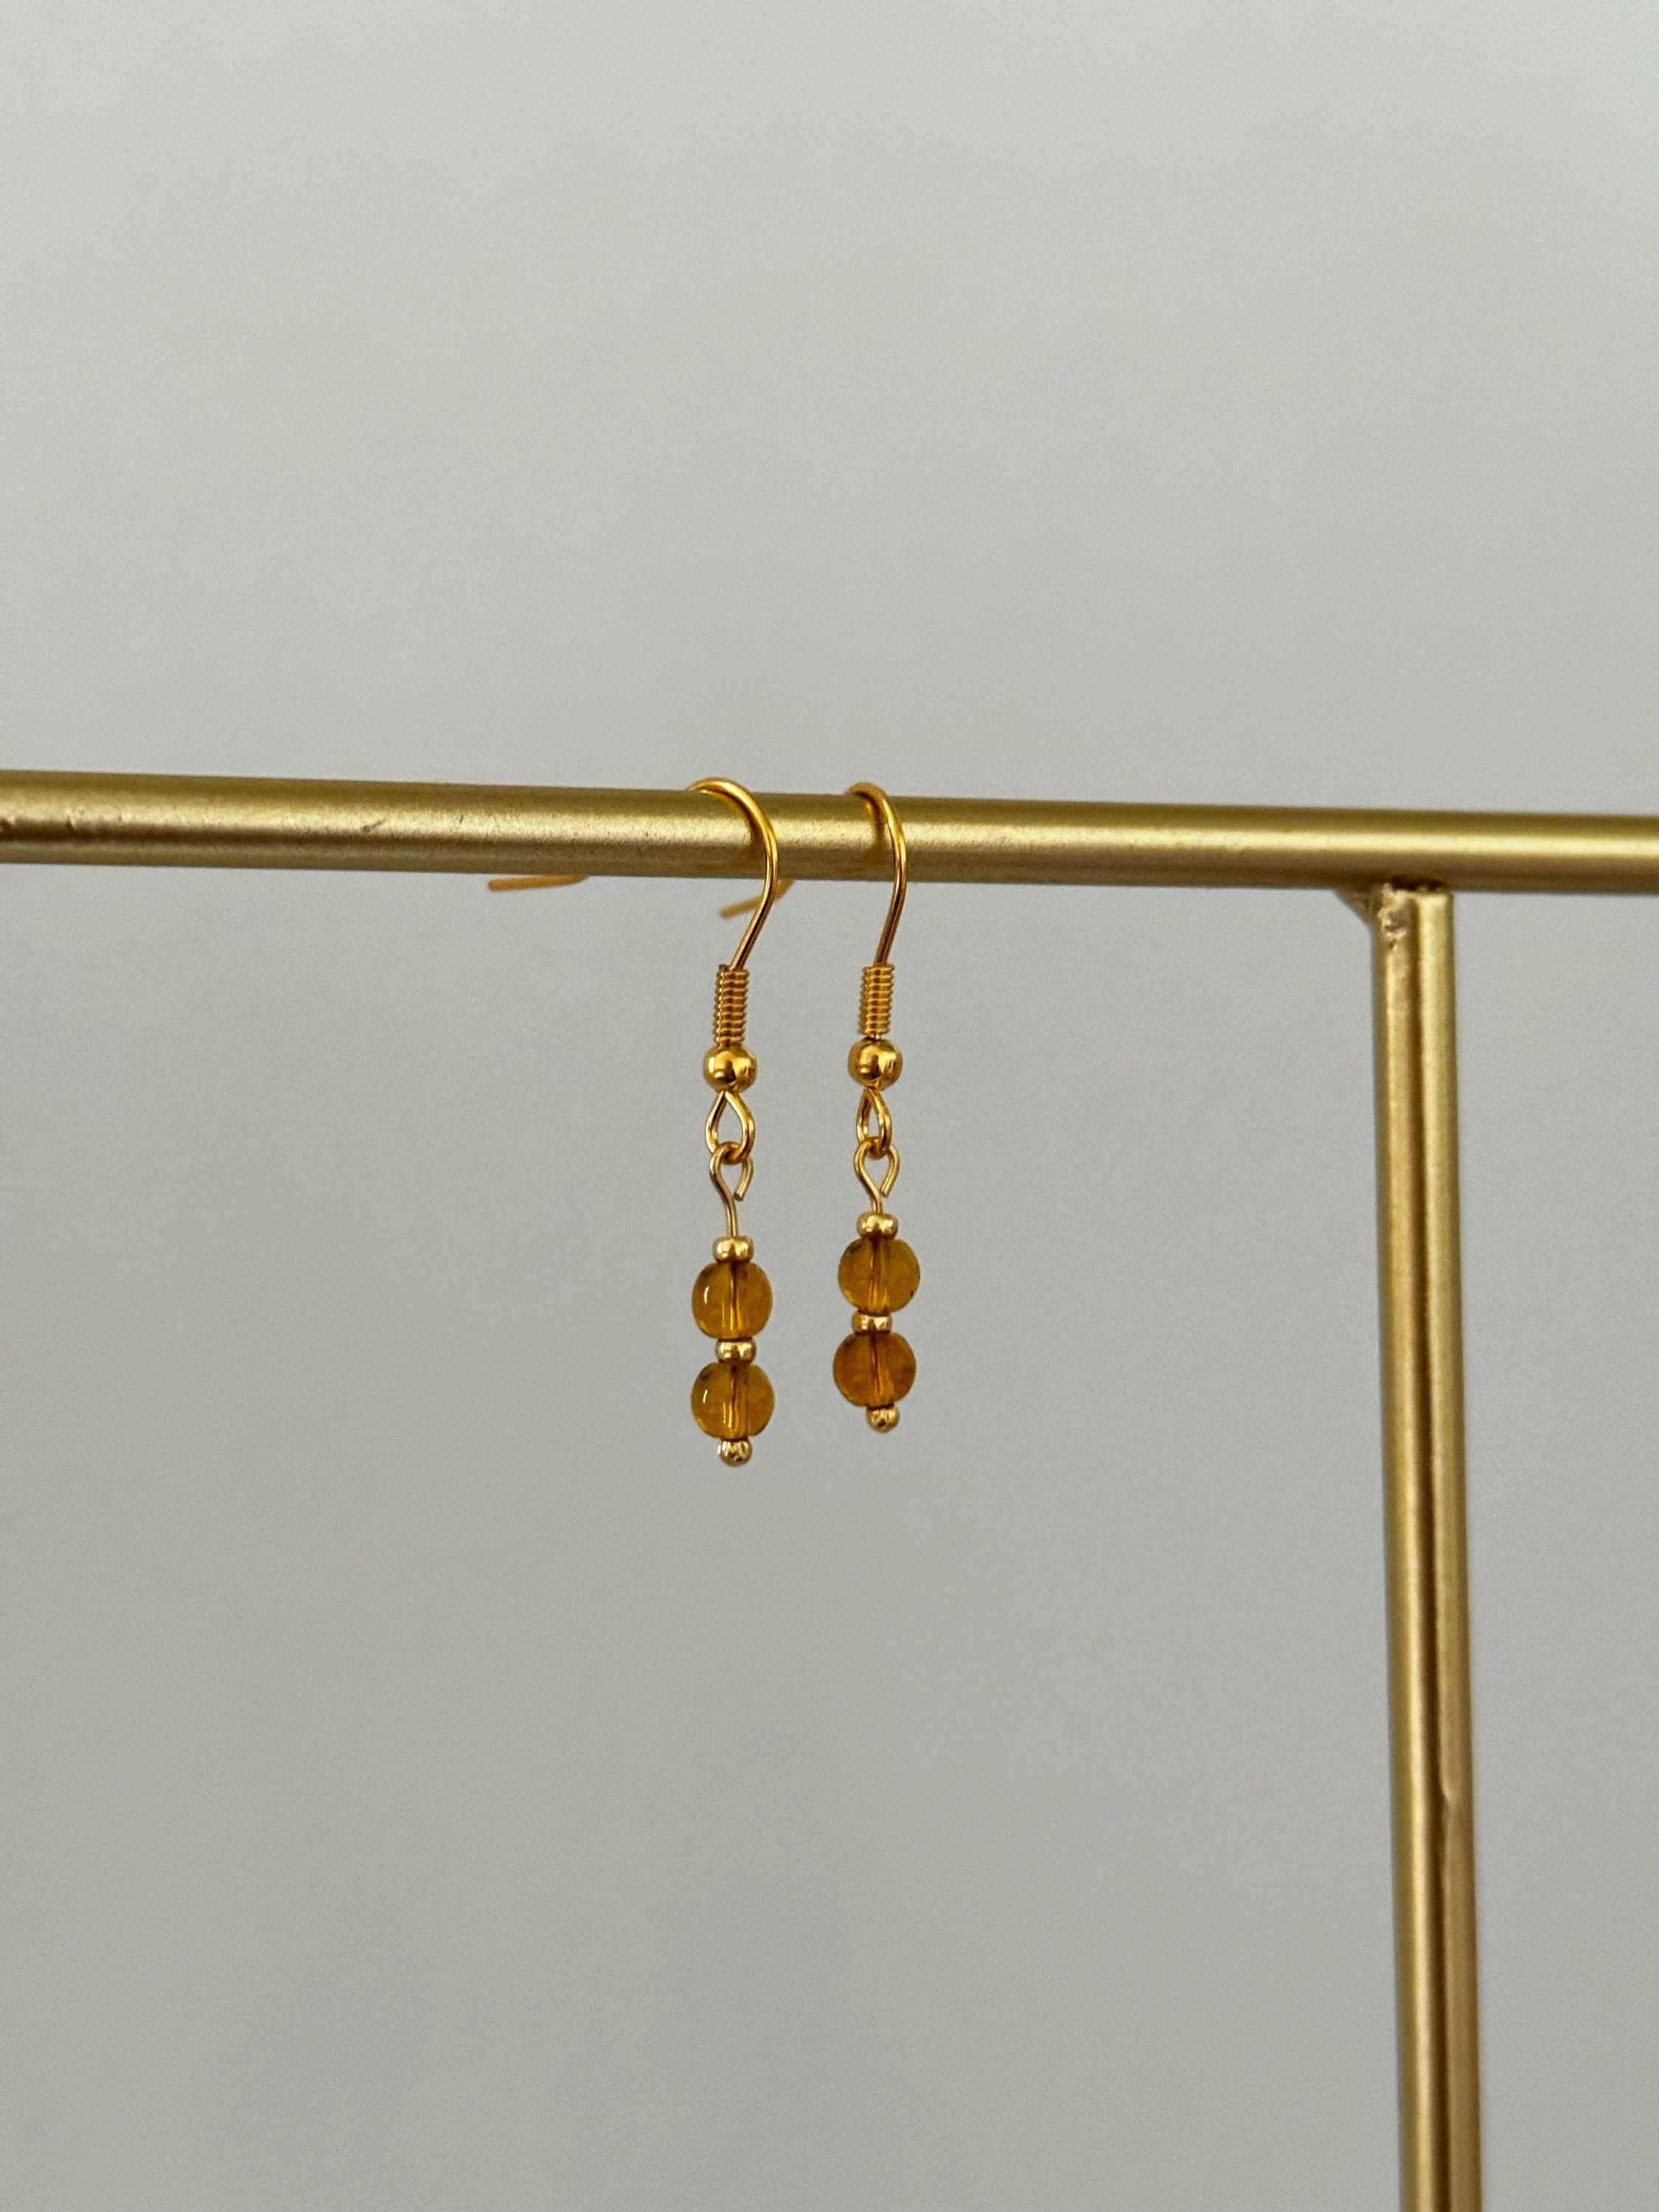 Gold beads for jewelry making : u/kouklascloset